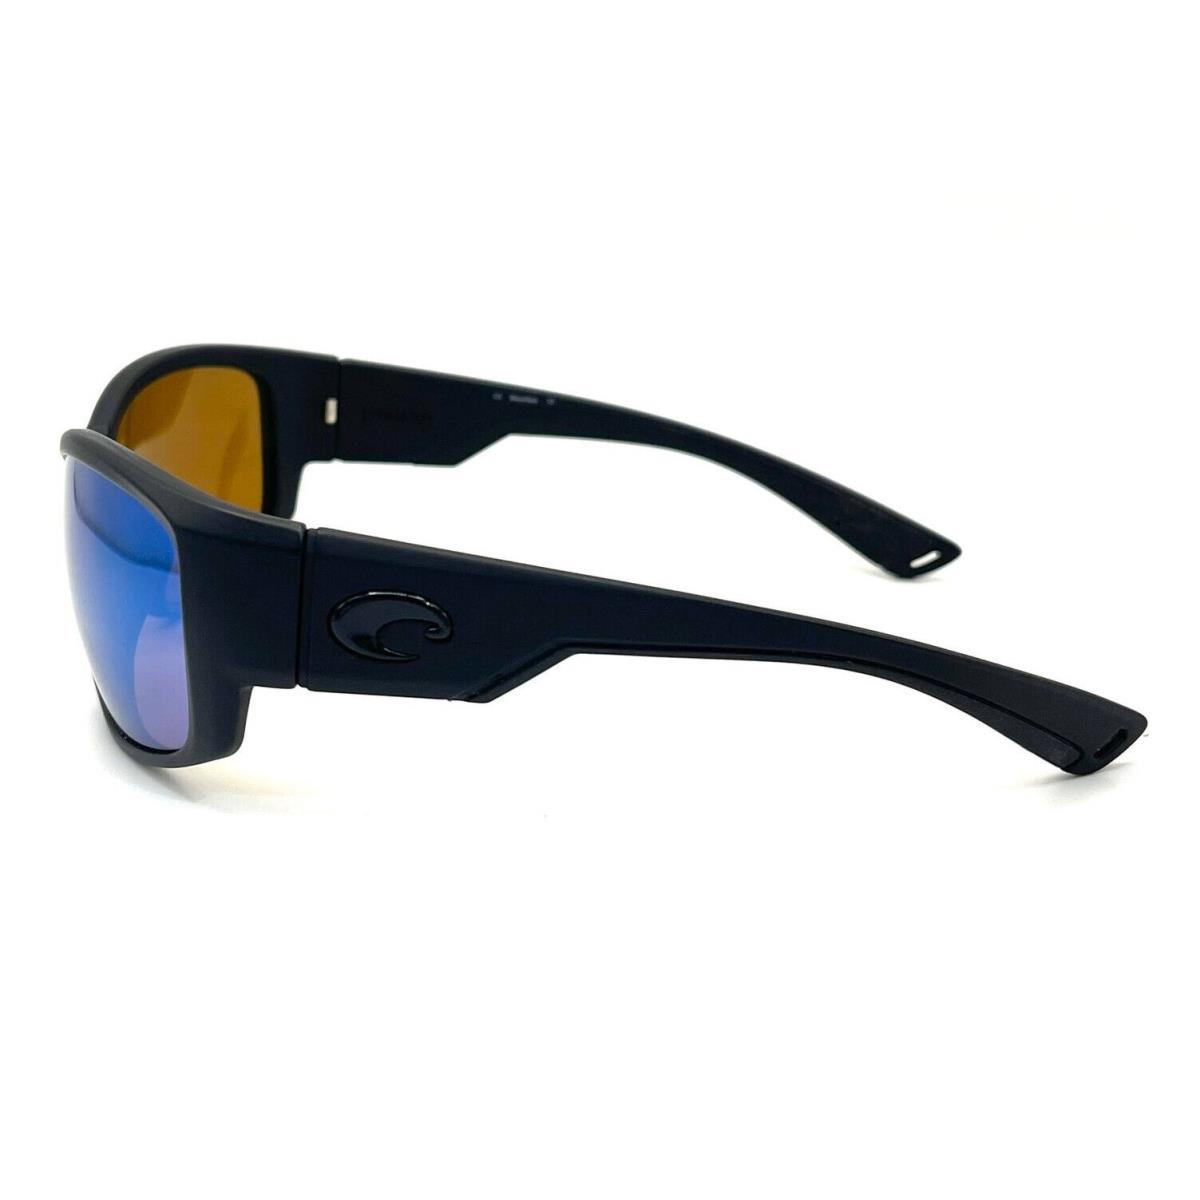 Costa Del Mar sunglasses Luke - Frame: Blackout, Lens: Green Mirror 400Glass 1